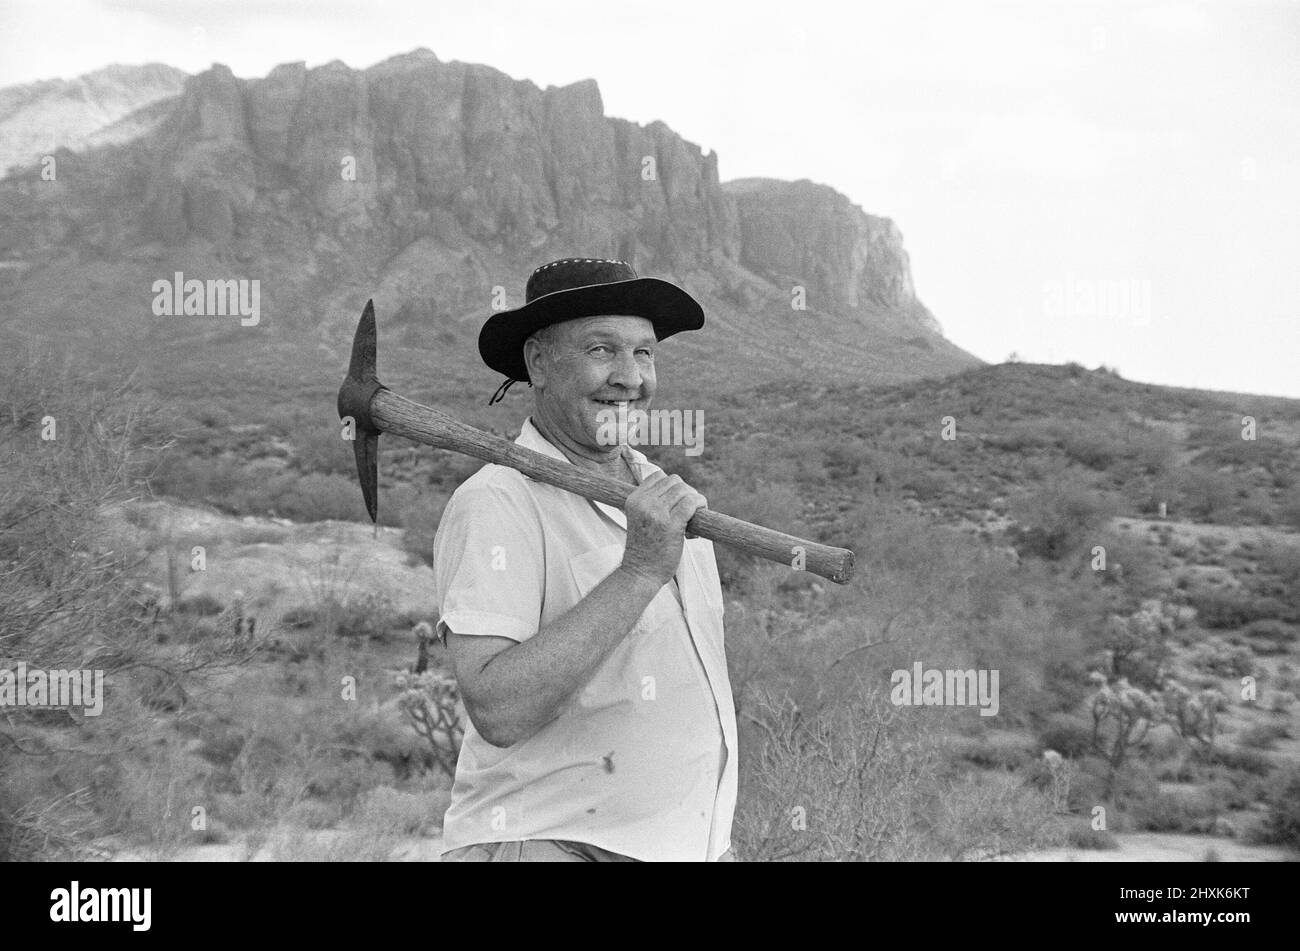 DOC Rosecrans ist ein Goldsucher auf Superstition Mountain, Apache Junction, Arizona. Wo er nach Gold gräbt und nach der legendären Mine des verlorenen Holländers sucht. DOC ist nur einer von einem endlosen Strom von Schatzjägern auf der Suche nach der verlorenen Mine die Legende wuchs, nachdem der Niederländer Jake Walz vor über 100 Jahren aus dem Berg auftauchte, als ein Sack Golderz behauptete, eine Mine mit einer Goldnaht gefunden zu haben 18 Zoll dick. 8.. August 1976 Stockfoto